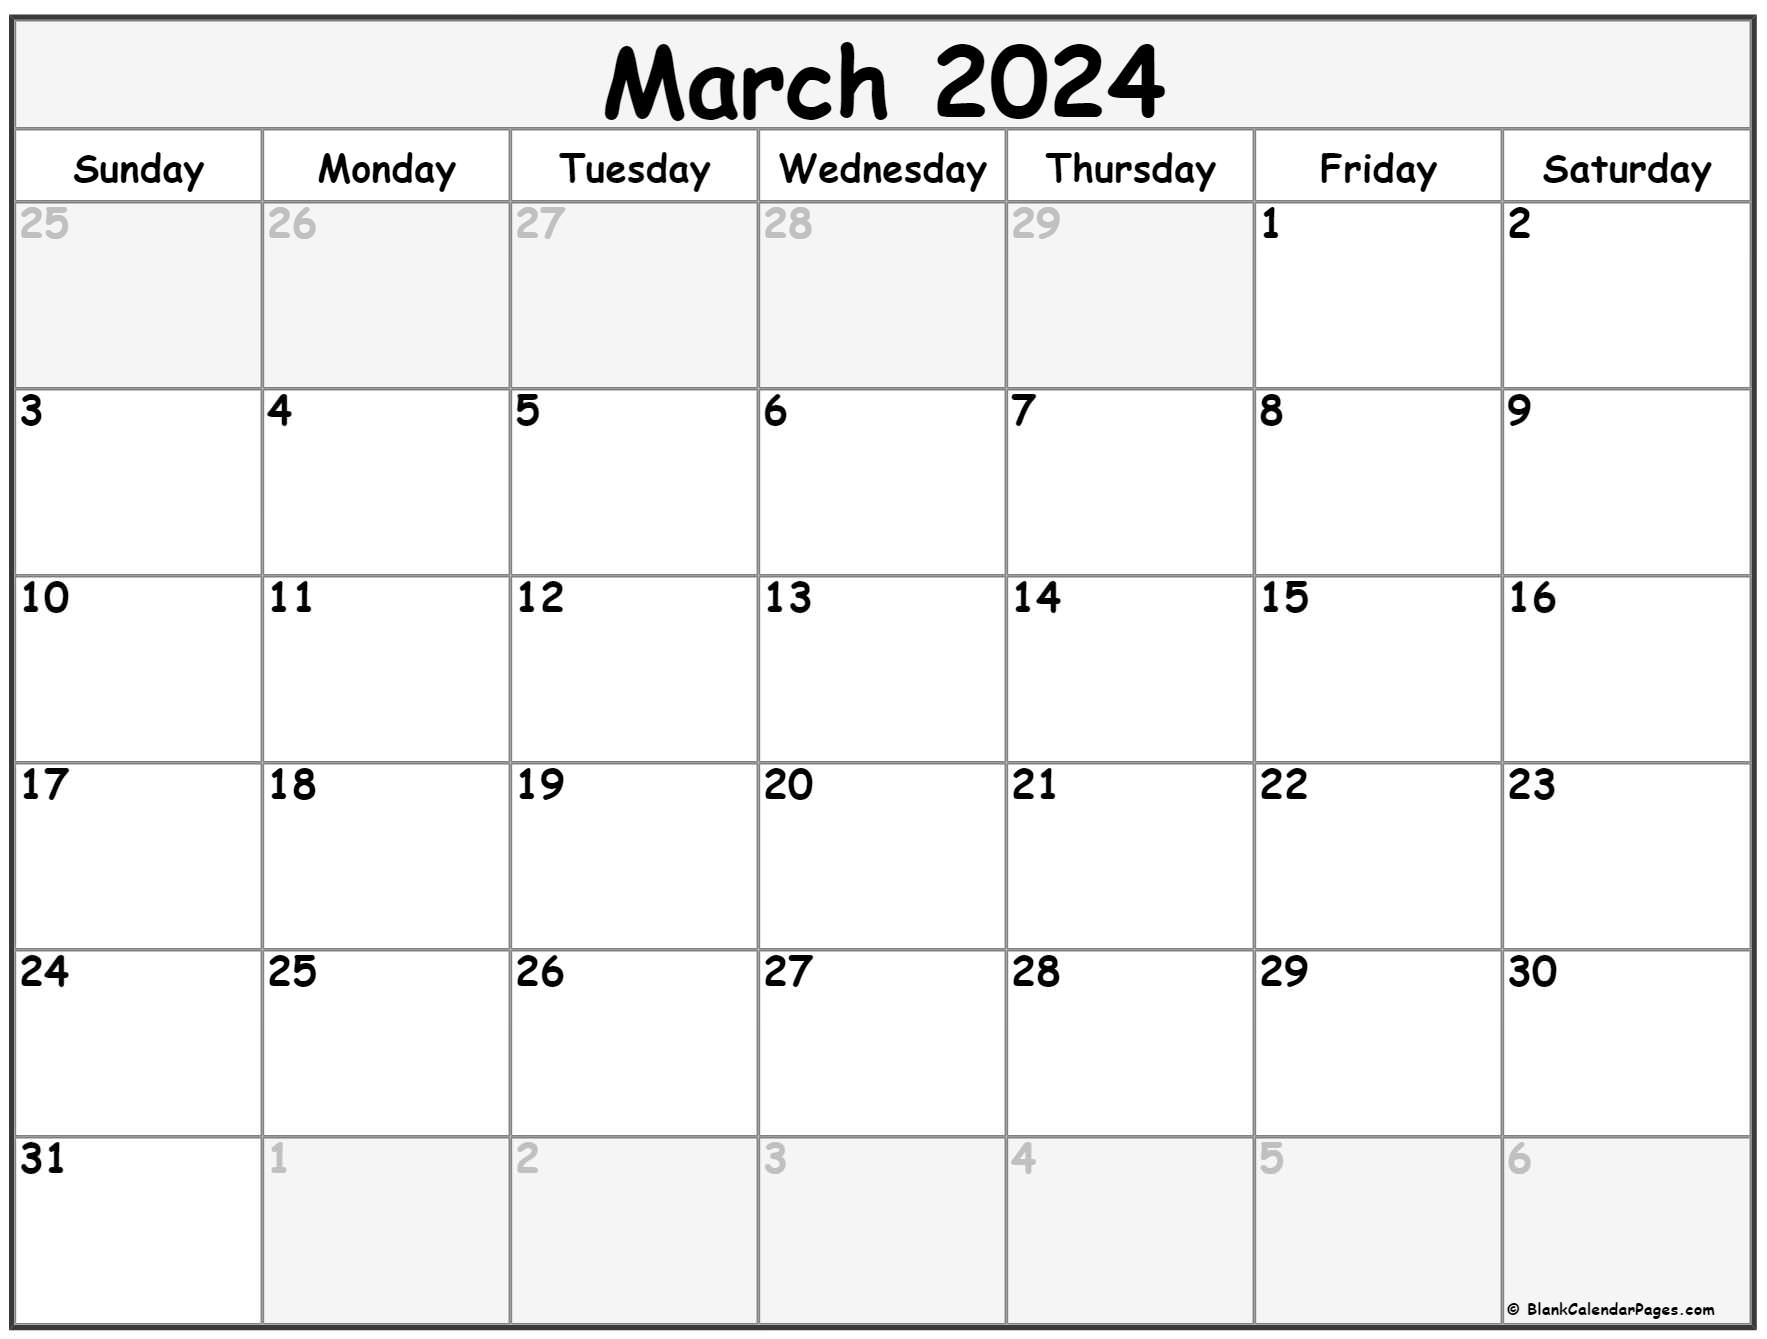 March April 2022 Calendar Printable March 2022 Calendar | Free Printable Calendar Templates